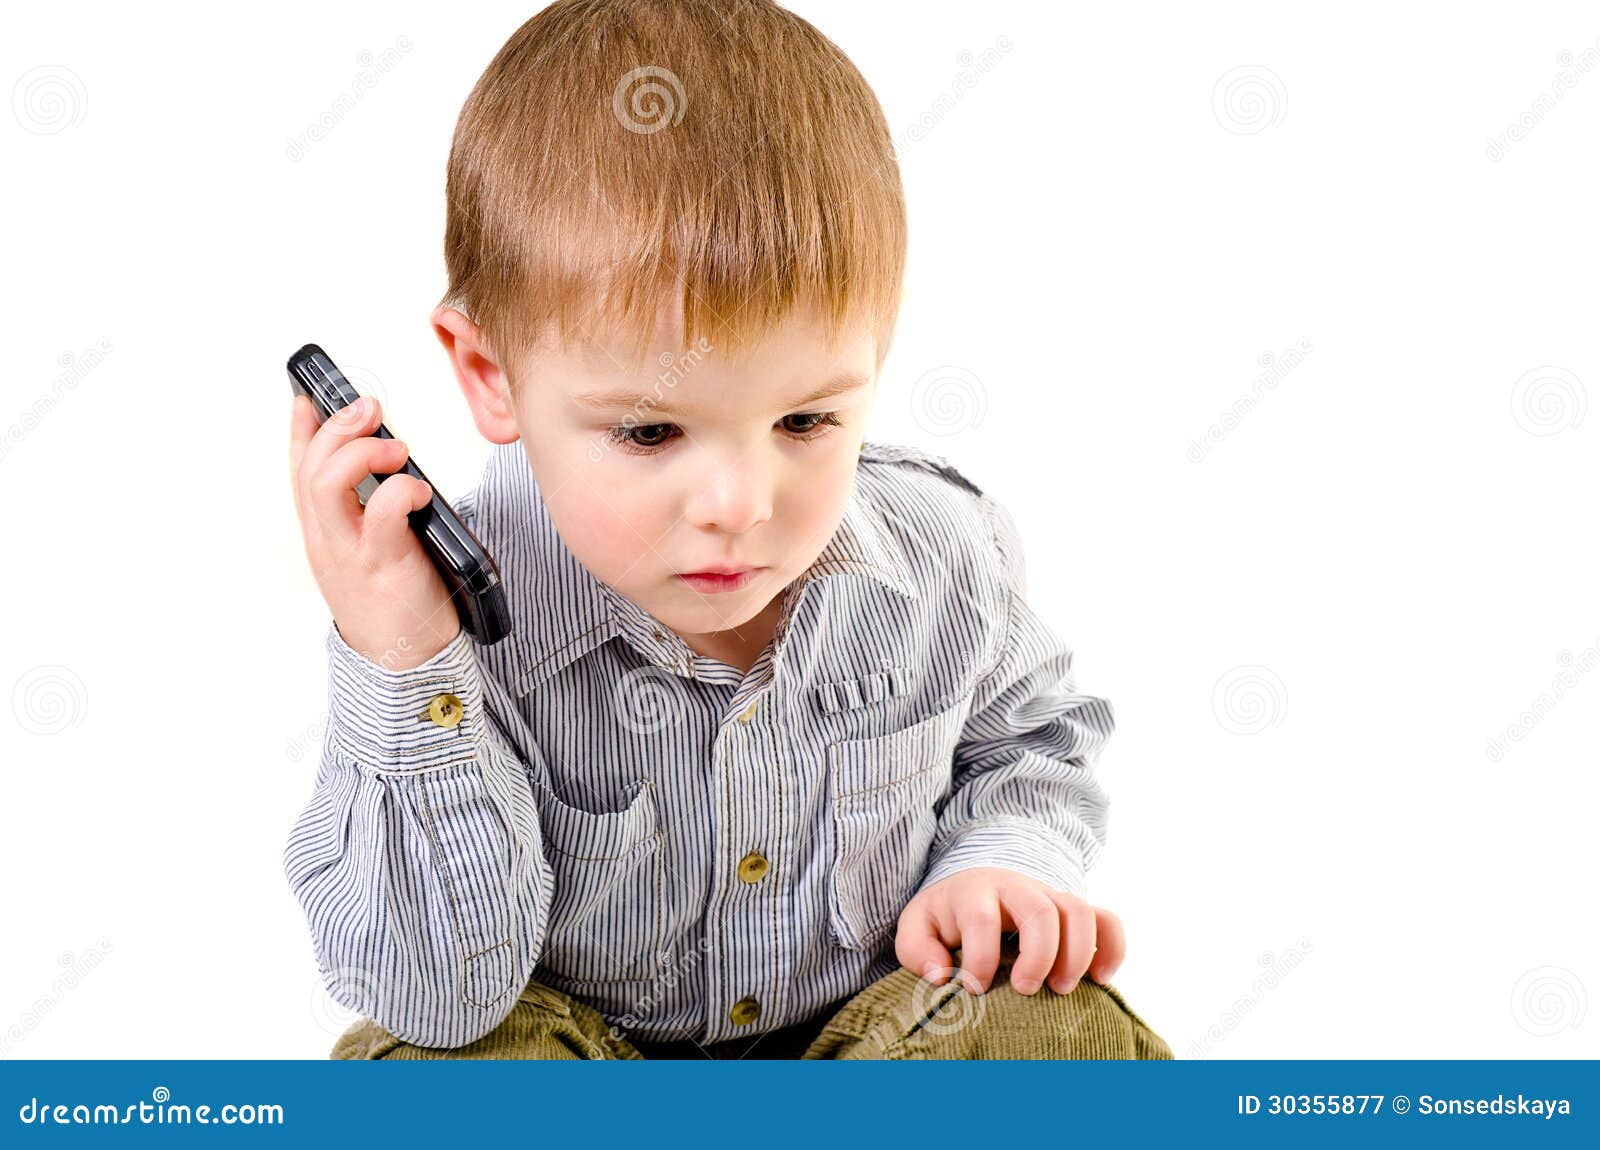 Включи телефон мальчик. Мальчик с телефоном. Мальчик говорит. Ребенок говорит по телефону. Юноша разговаривает по телефону.